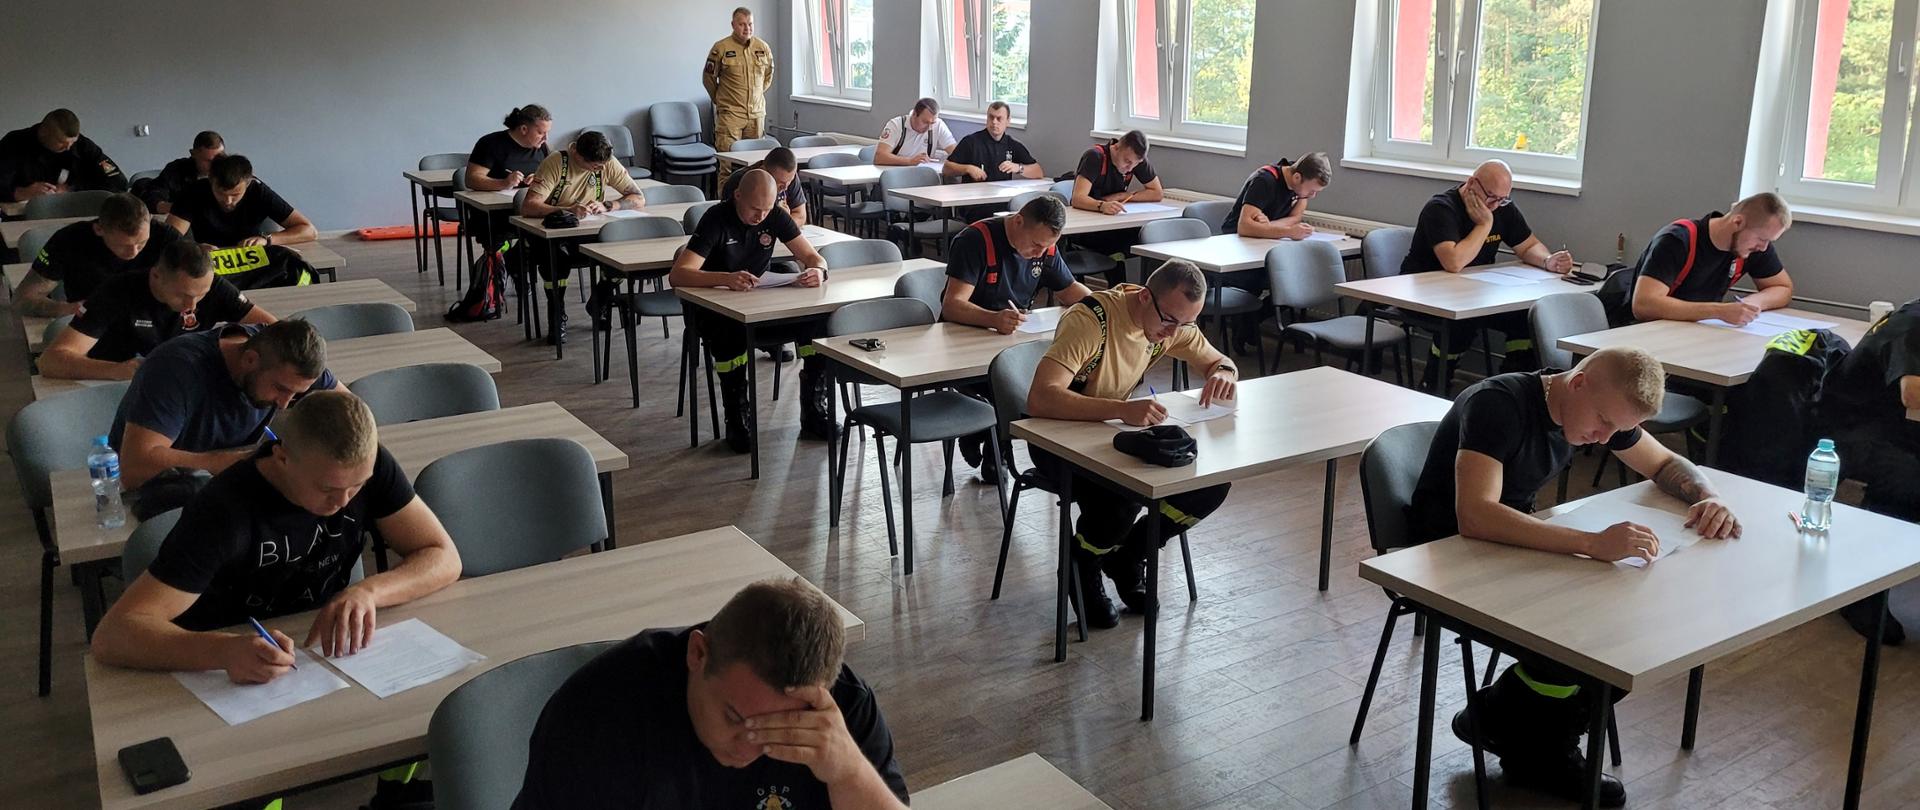 Strażacy siedzący pojedynczo przy stołach na sali wykładowej podczas egzaminu teoretycznego.